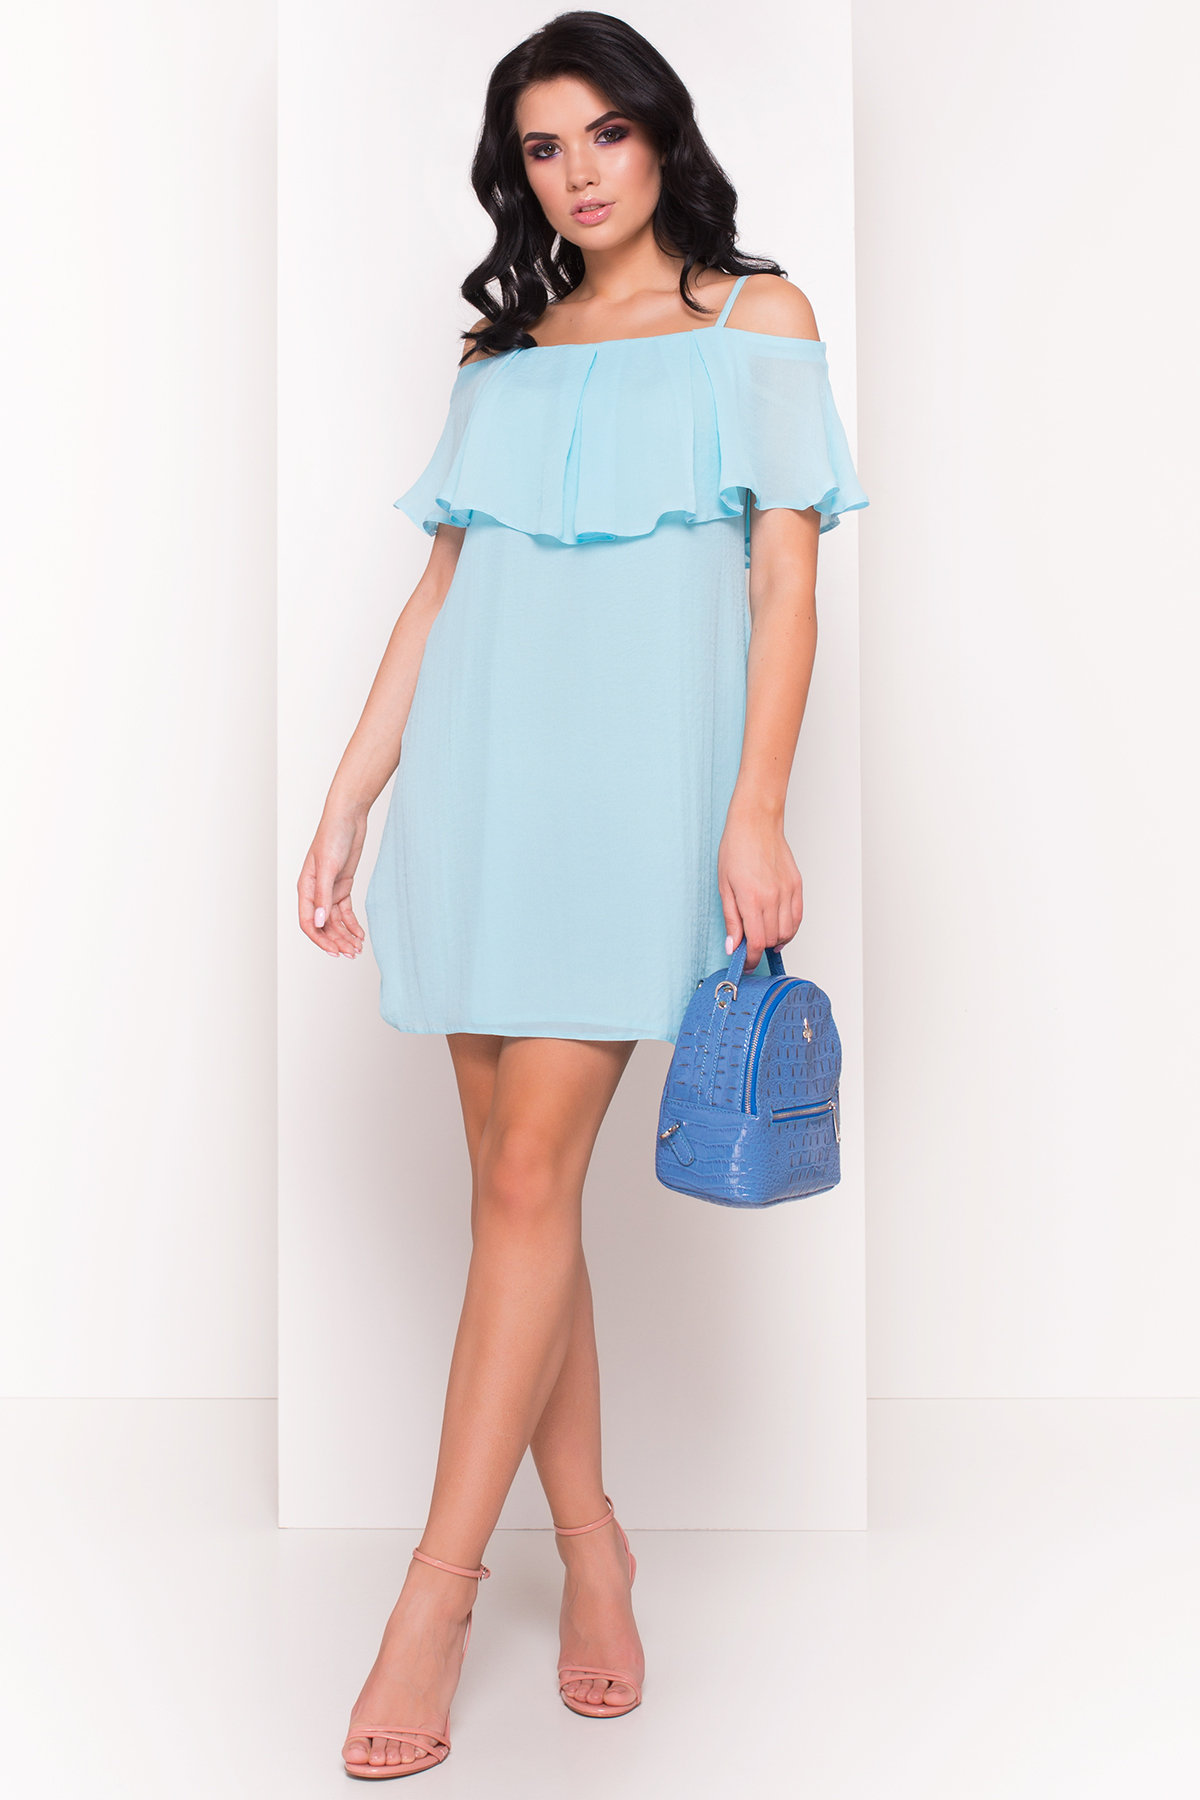 TW Платье Восток 5123 Цвет: Голубой